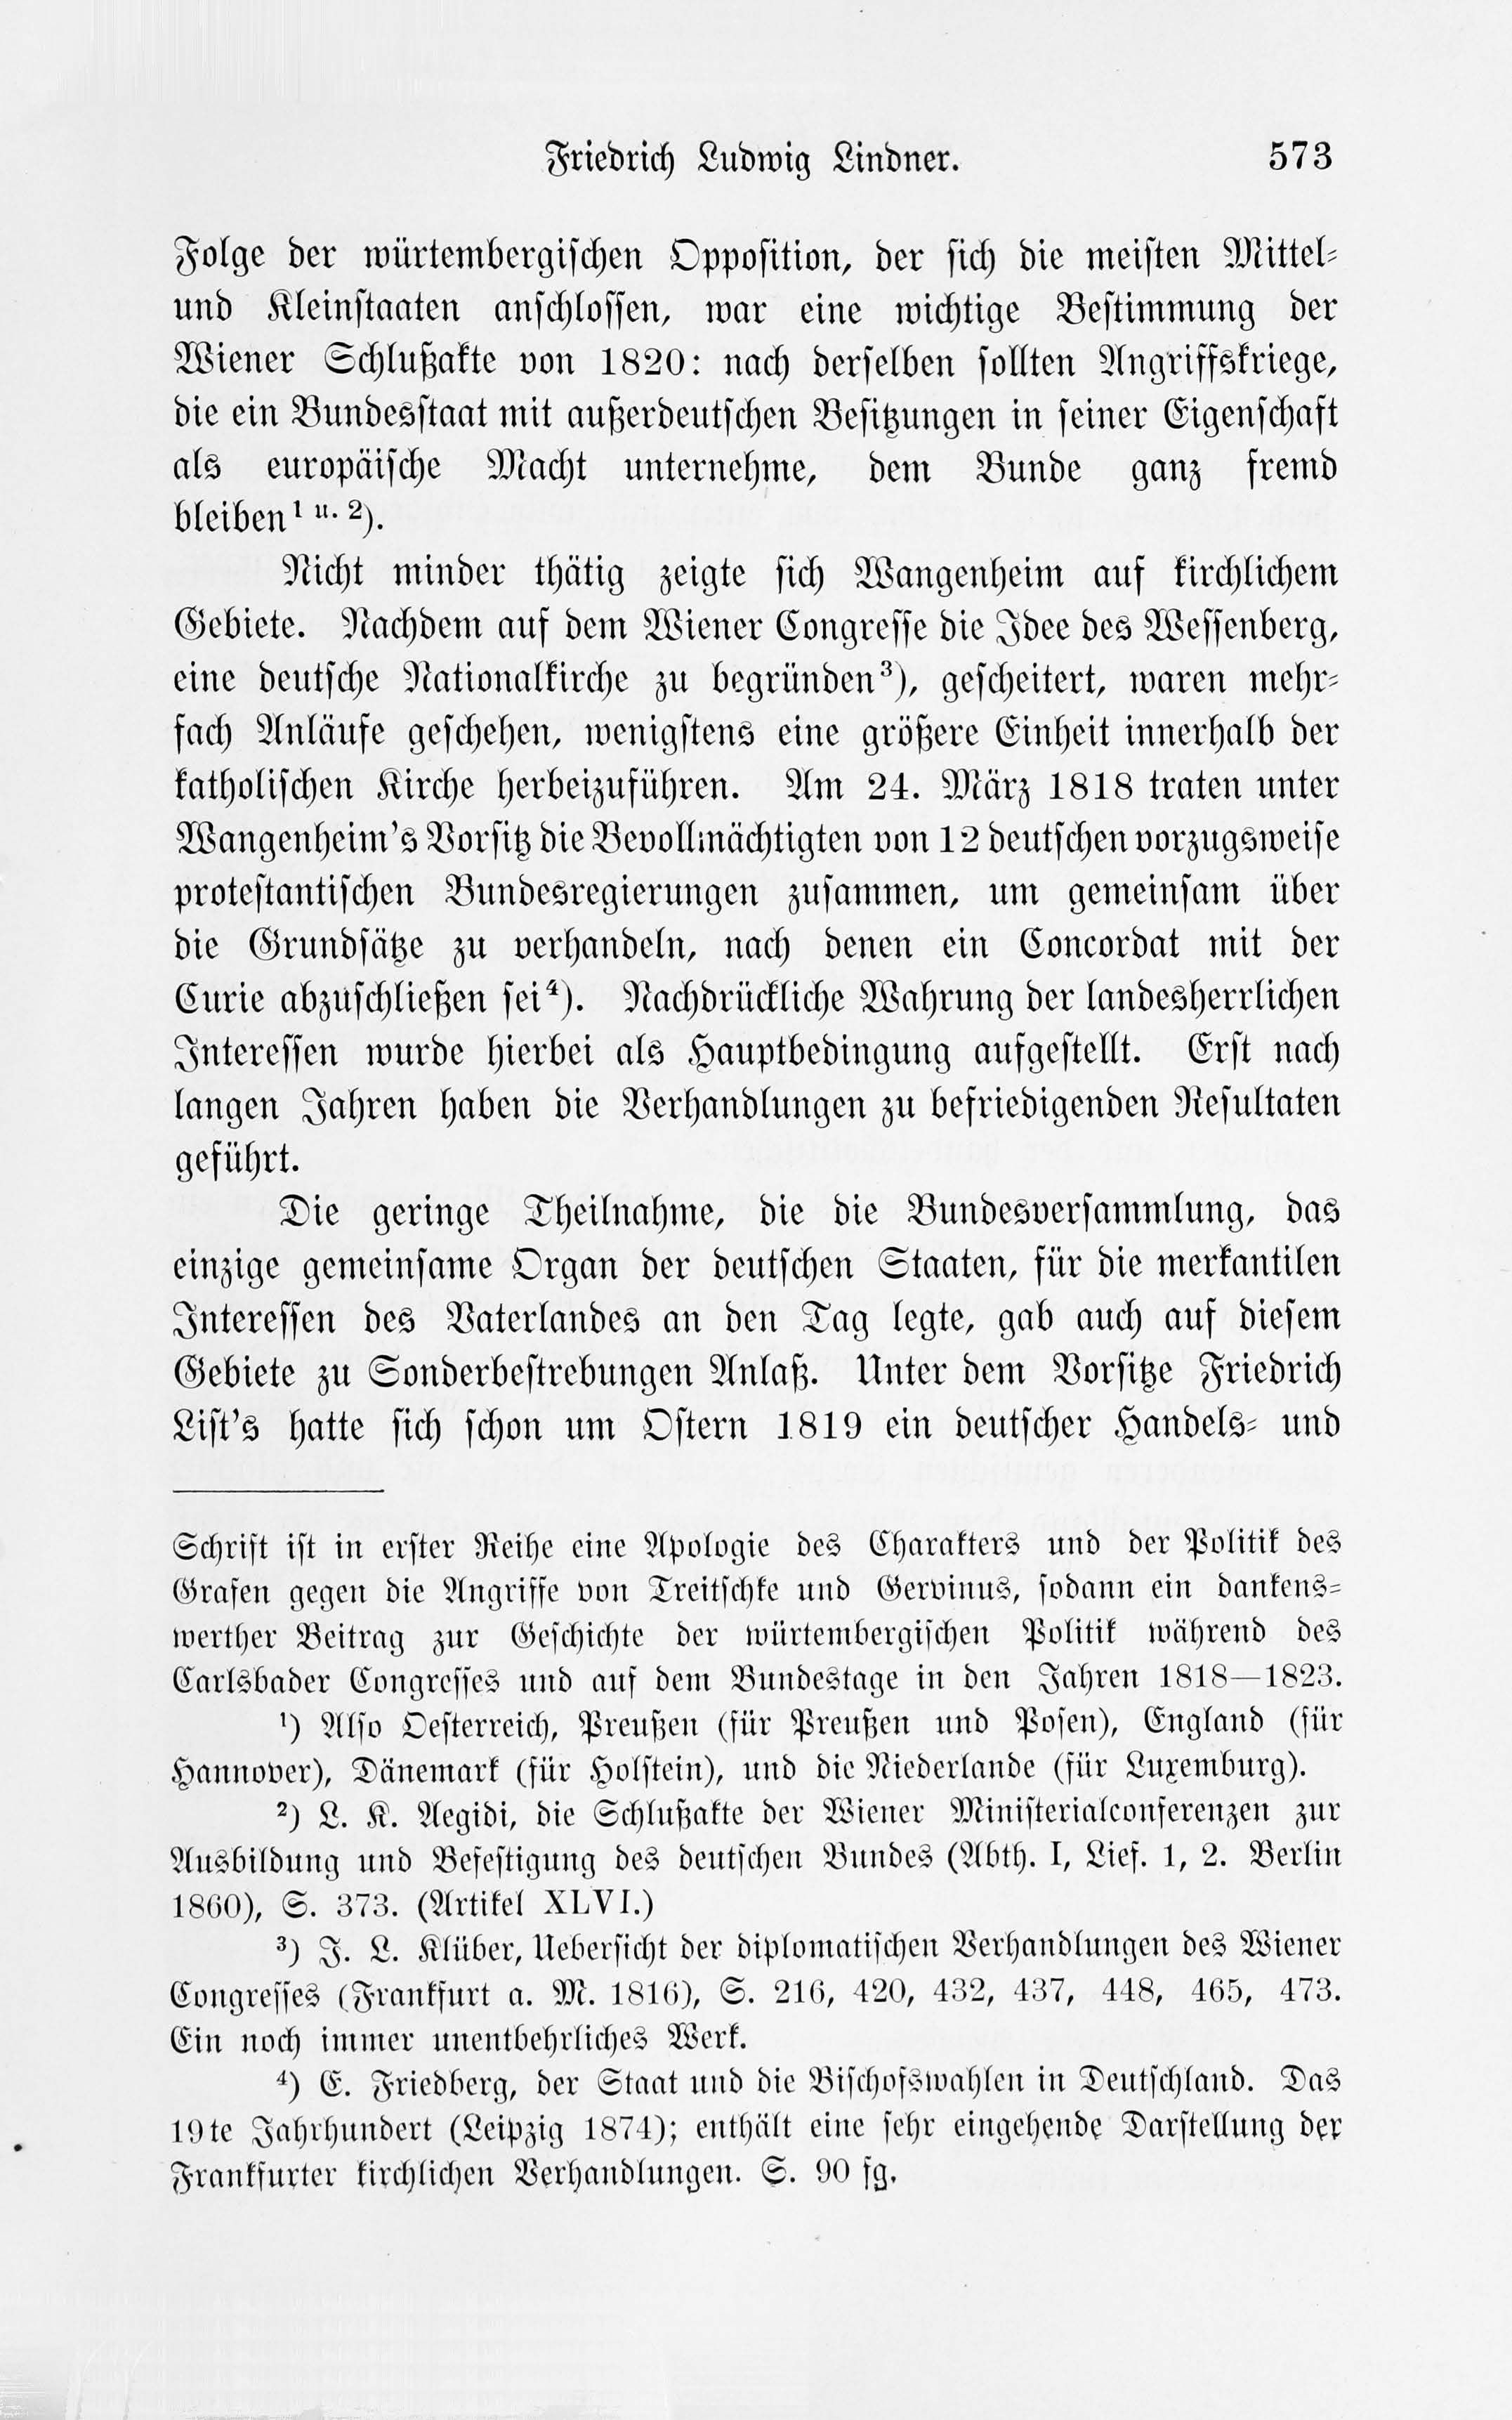 Leben und Schriften des Kurländers Friedrich Ludwig Lindner [1] (1895) | 43. Main body of text